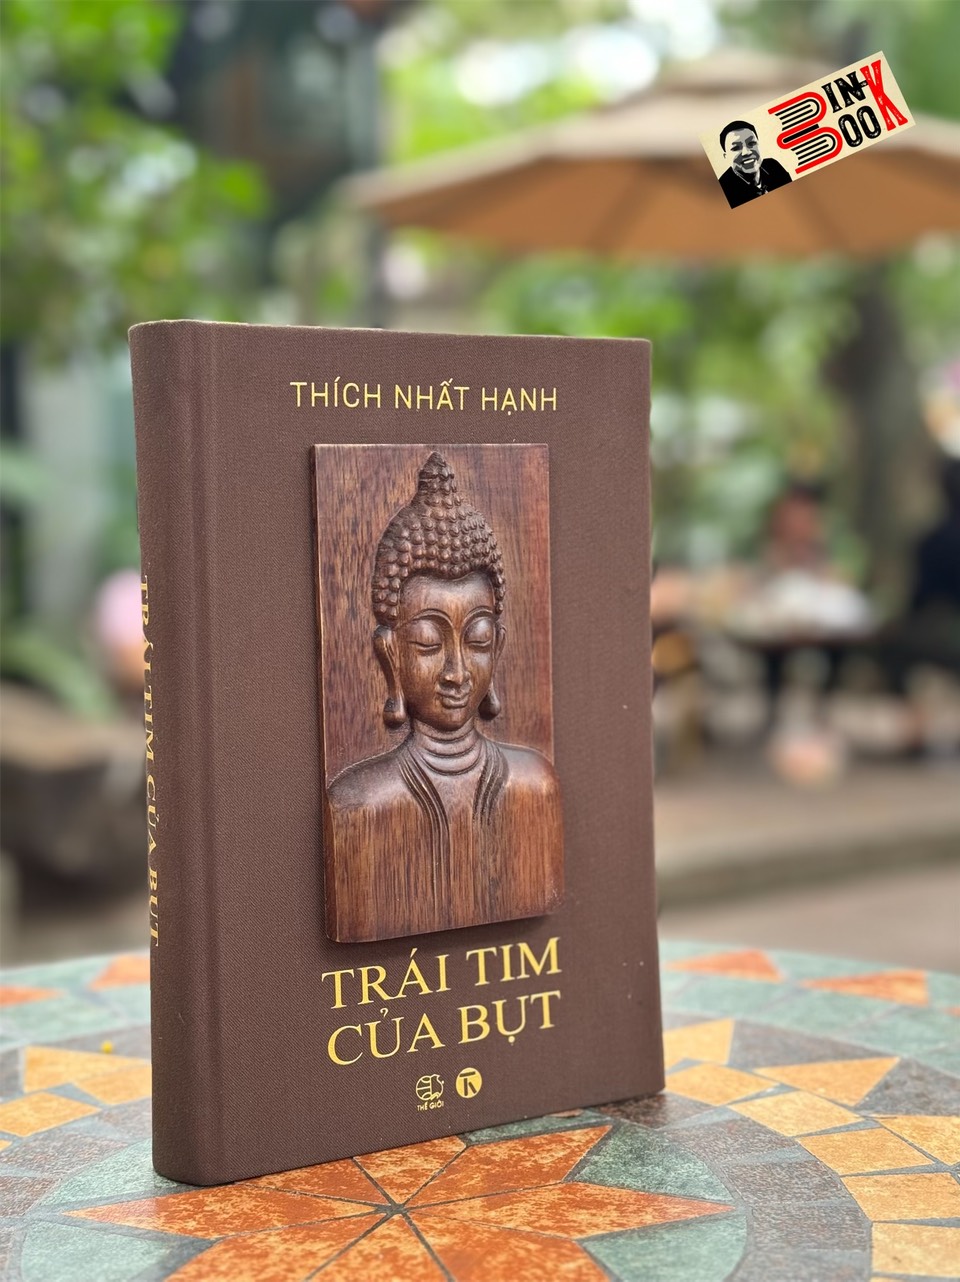 (Ấn phẩm đặc biệt giới hạn 300 bản, bìa bọc vải) TRÁI TIM CỦA BỤT - Thích Nhất Hạnh – Thái Hà Book